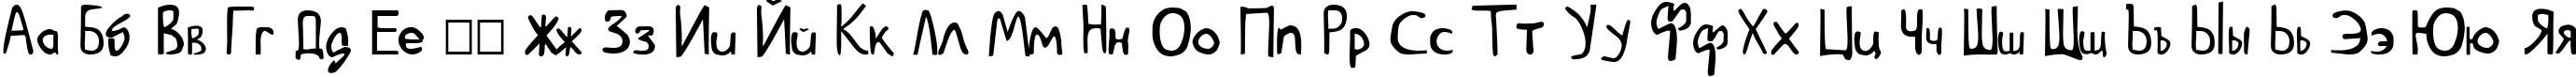 Пример написания русского алфавита шрифтом Goedemorgen, Luc[as]